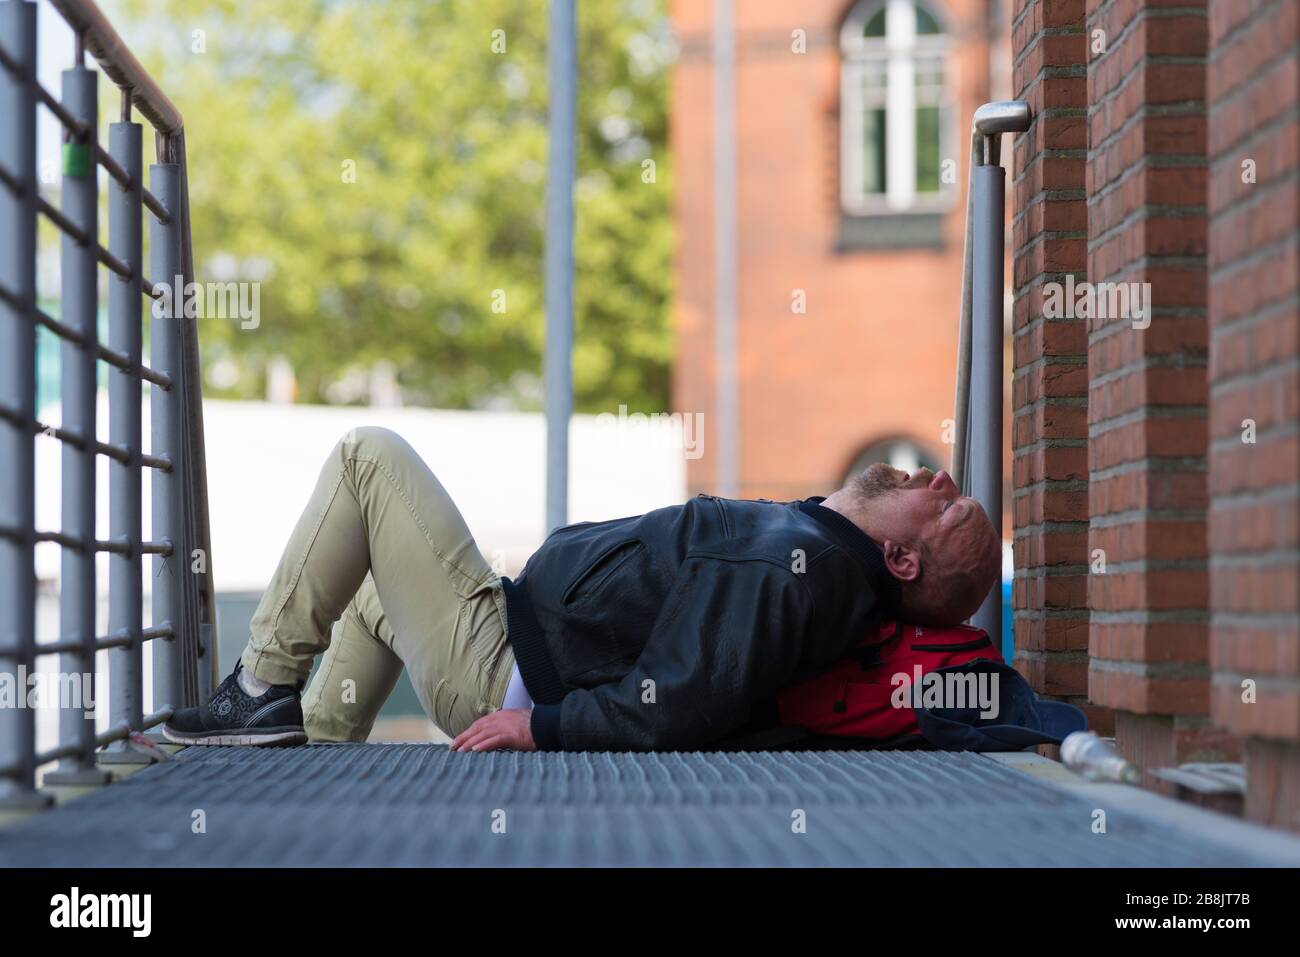 HAMBURG, DEUTSCHLAND - 12. MAI 2018: Betrunkener Mann schläft während der jährlichen Hamburger Hafenjubiläumstage auf der Straße Stockfoto